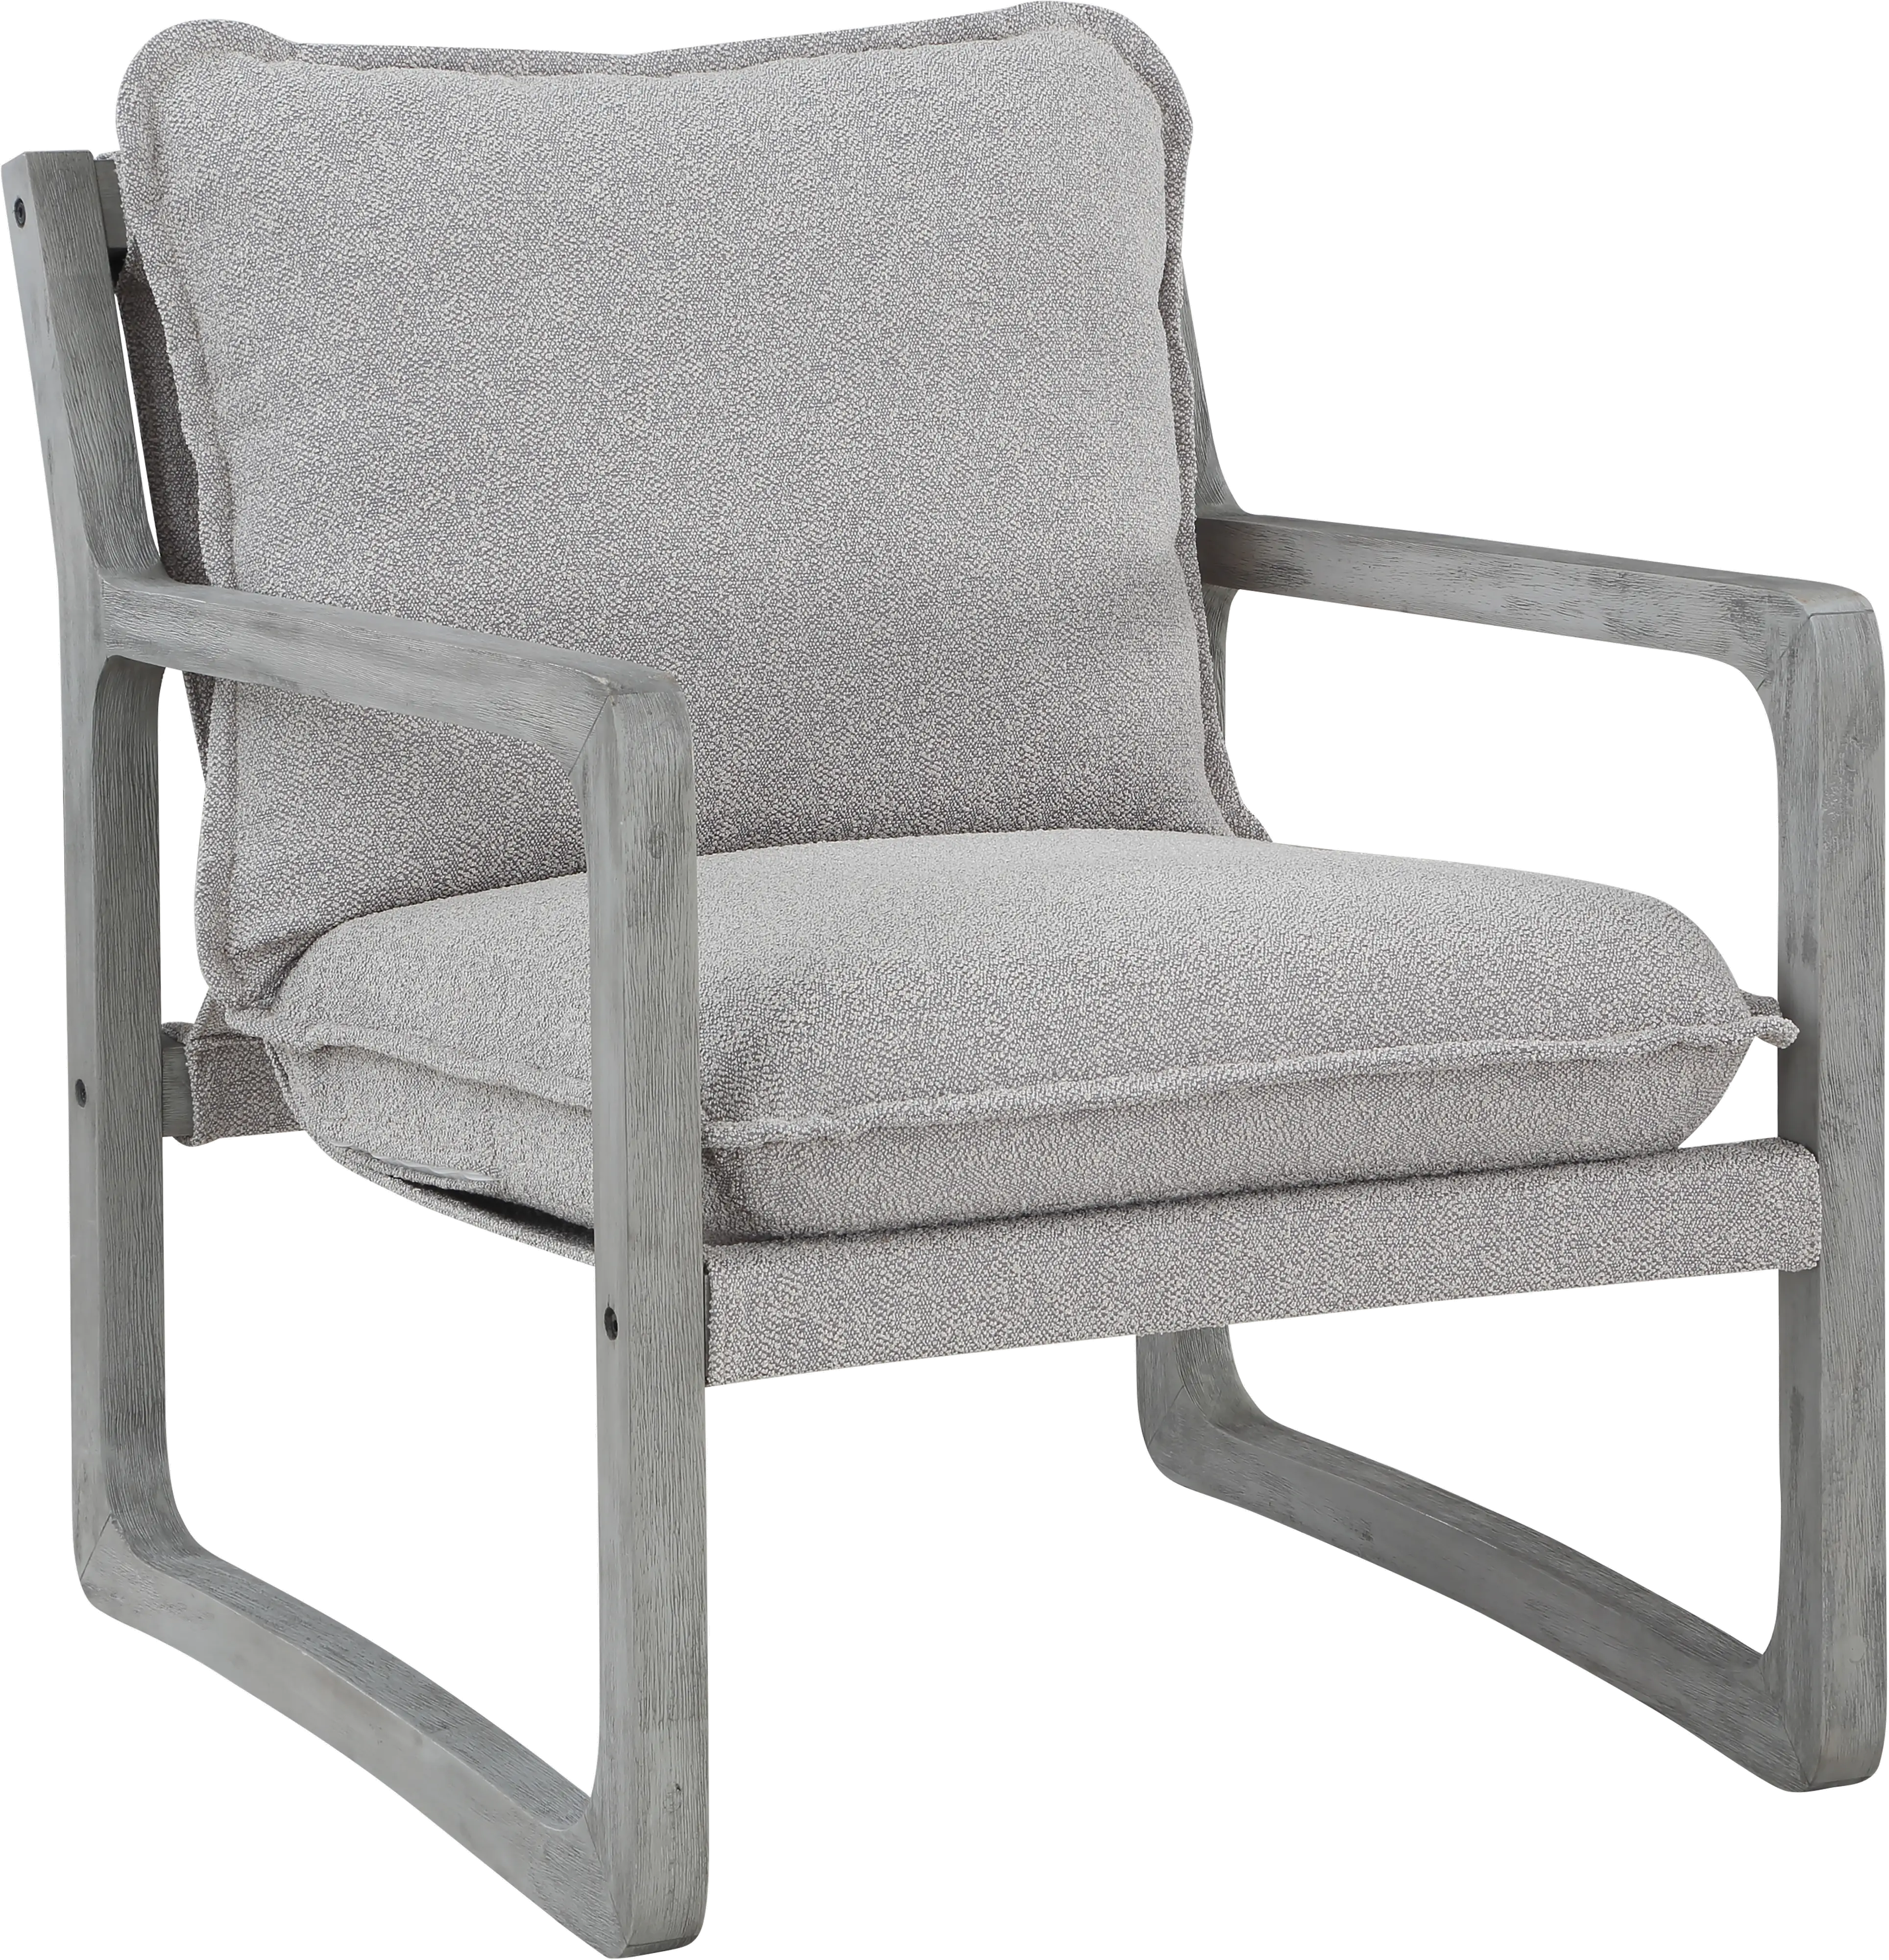 Kai Gray Accent Chair